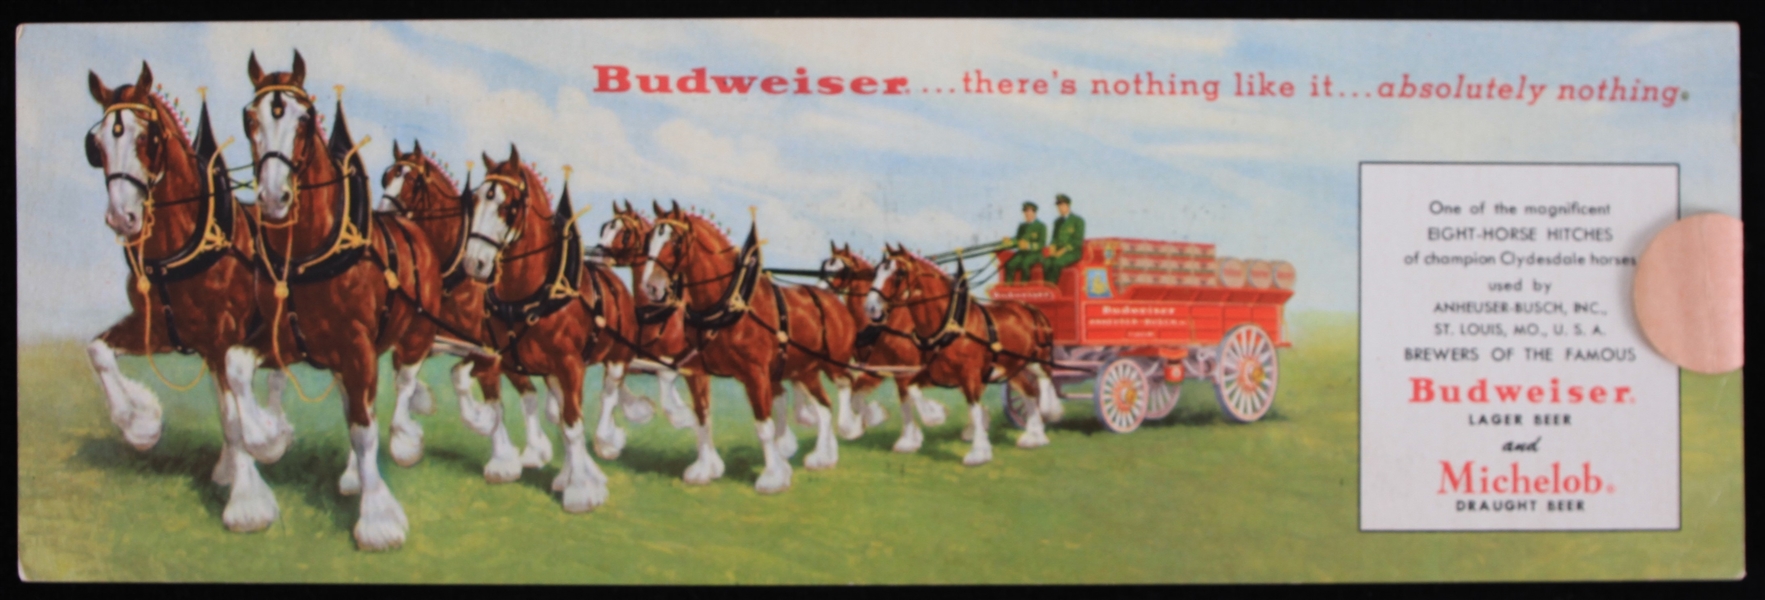 1958-1963 Budweiser Postcard